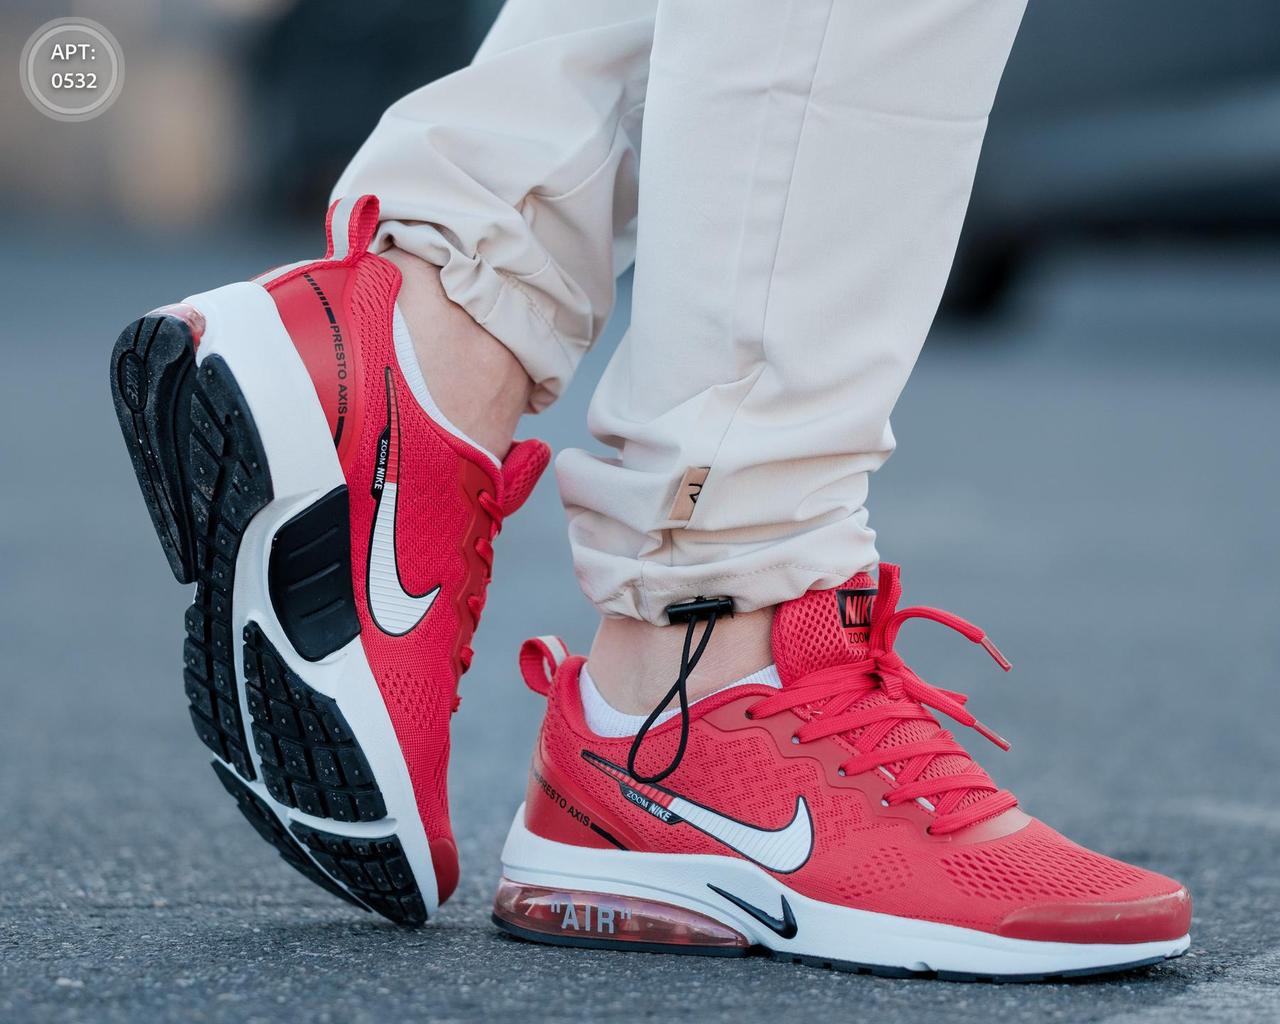 Чоловічі легкі кросівки Nike Air Presto Axis Red червоні повсякденні найк айр весна літо